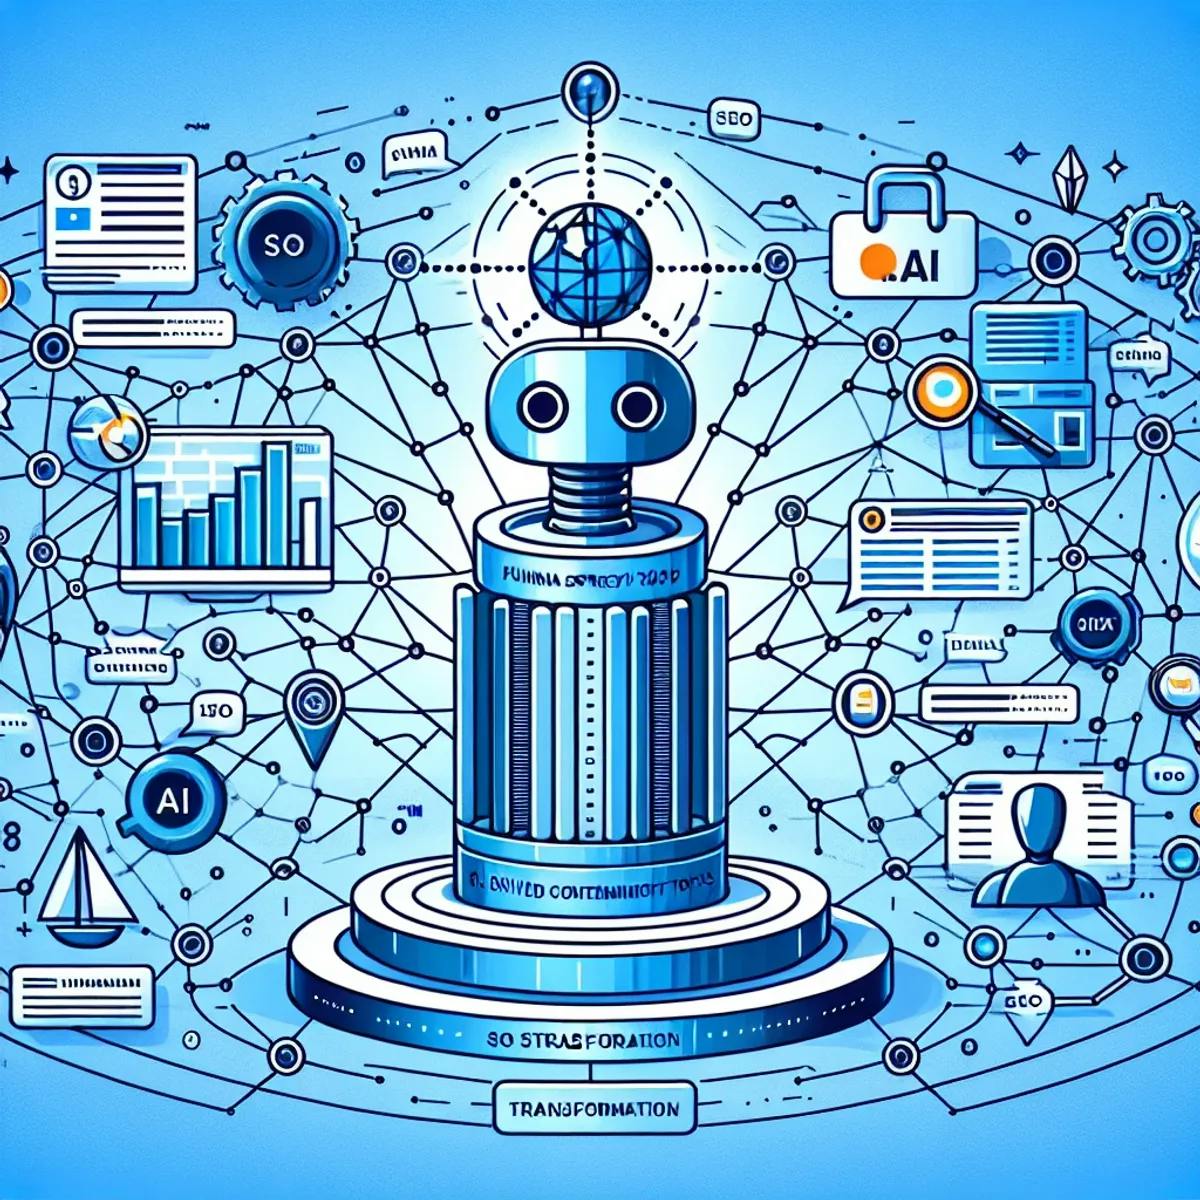 基于AI的SEO策略转变：一个大柱子被相互连接的网站所包围，象征着各种用户查询和参与度，还有象征着SEO中使用的AI工具的象征性工具，如机器人手和冲浪板。